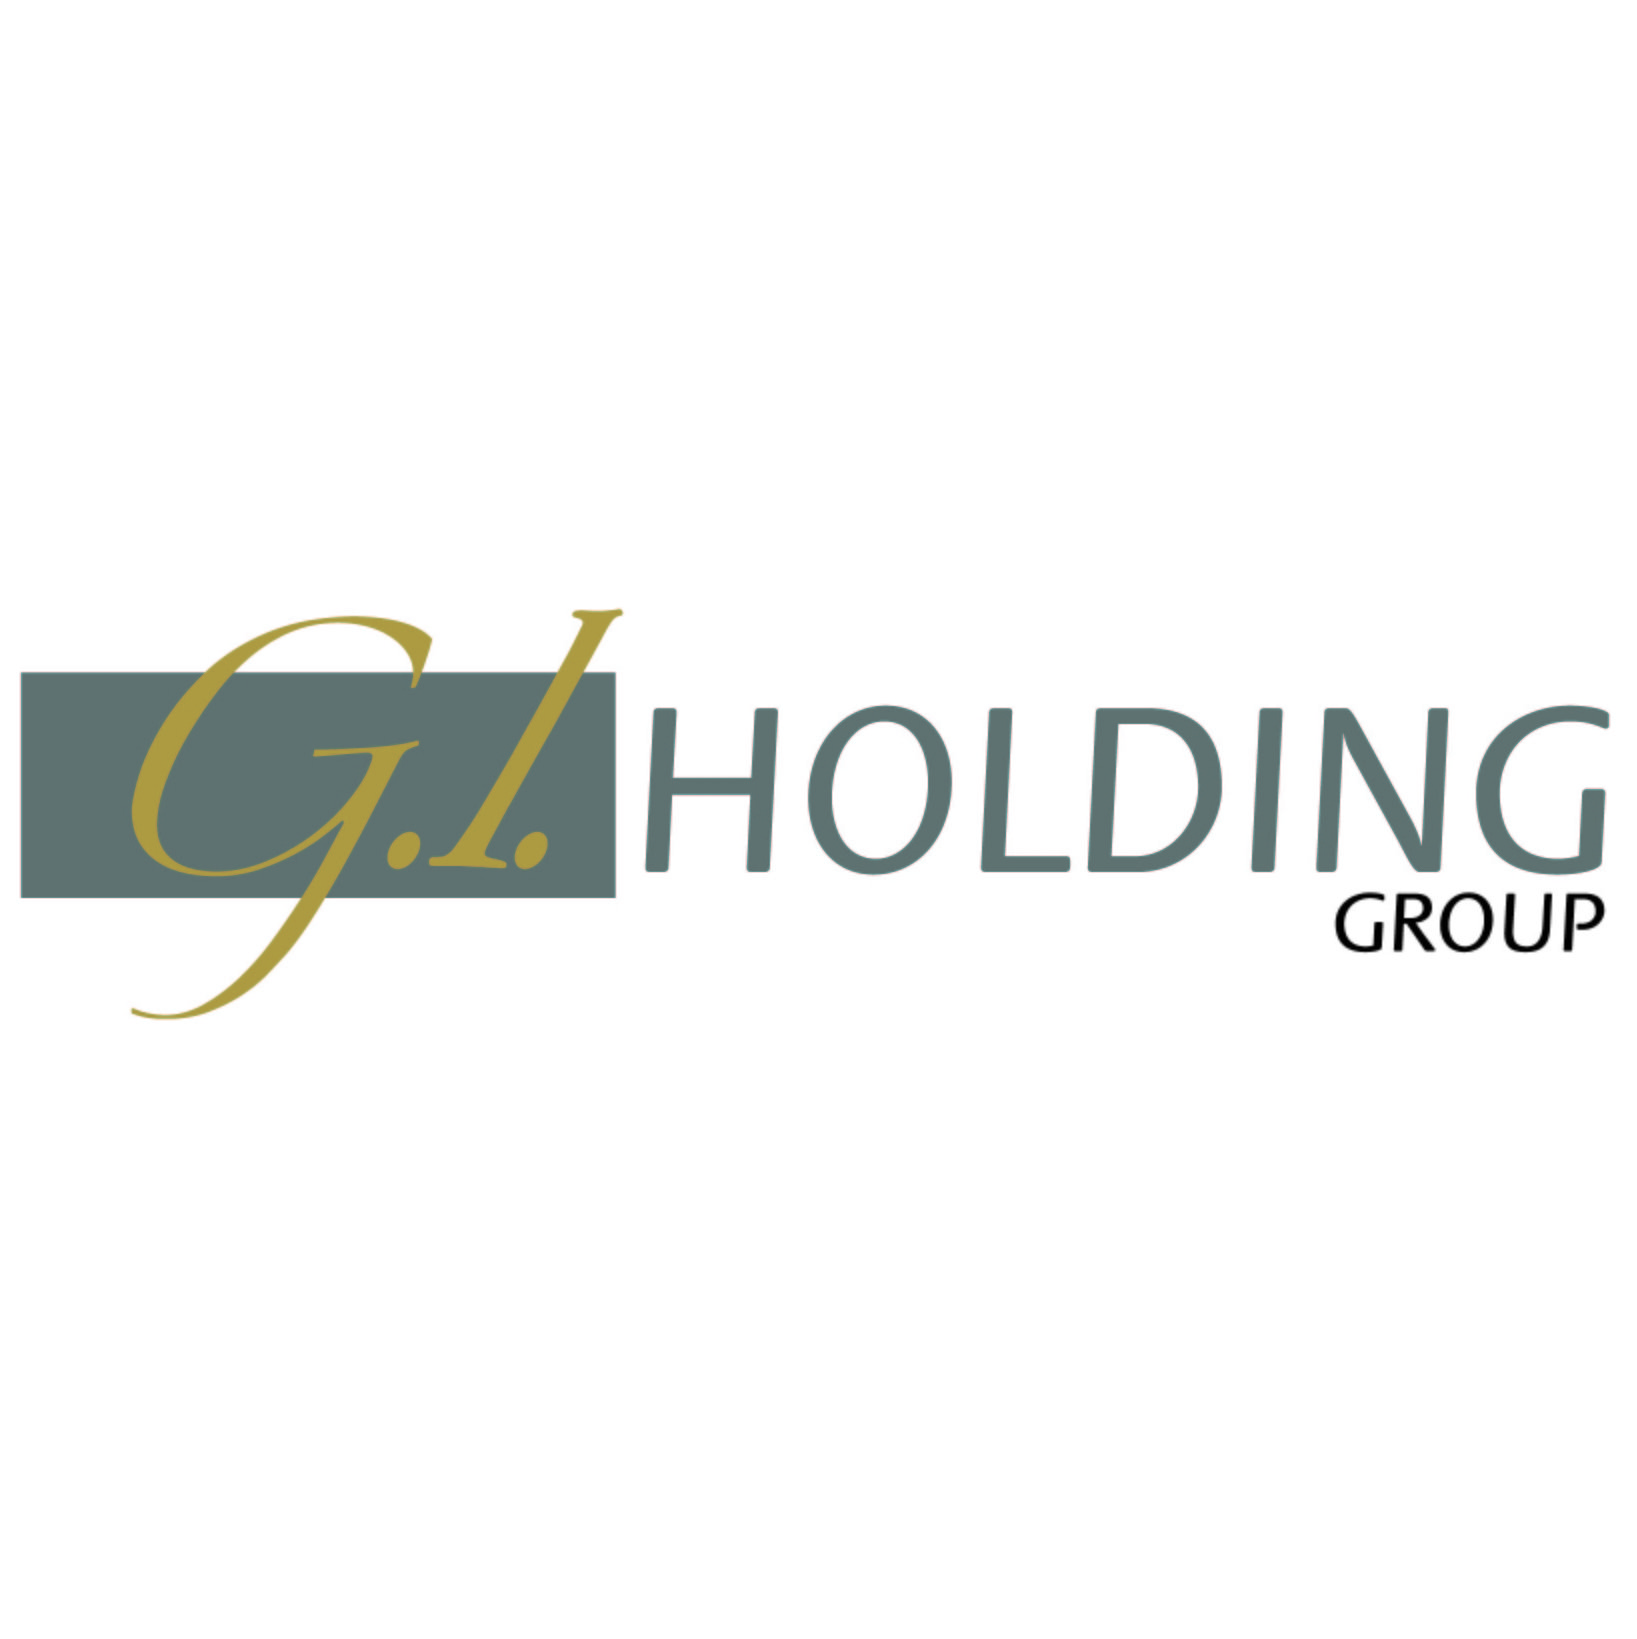 logo_G.I.HOLDING_GROUP_